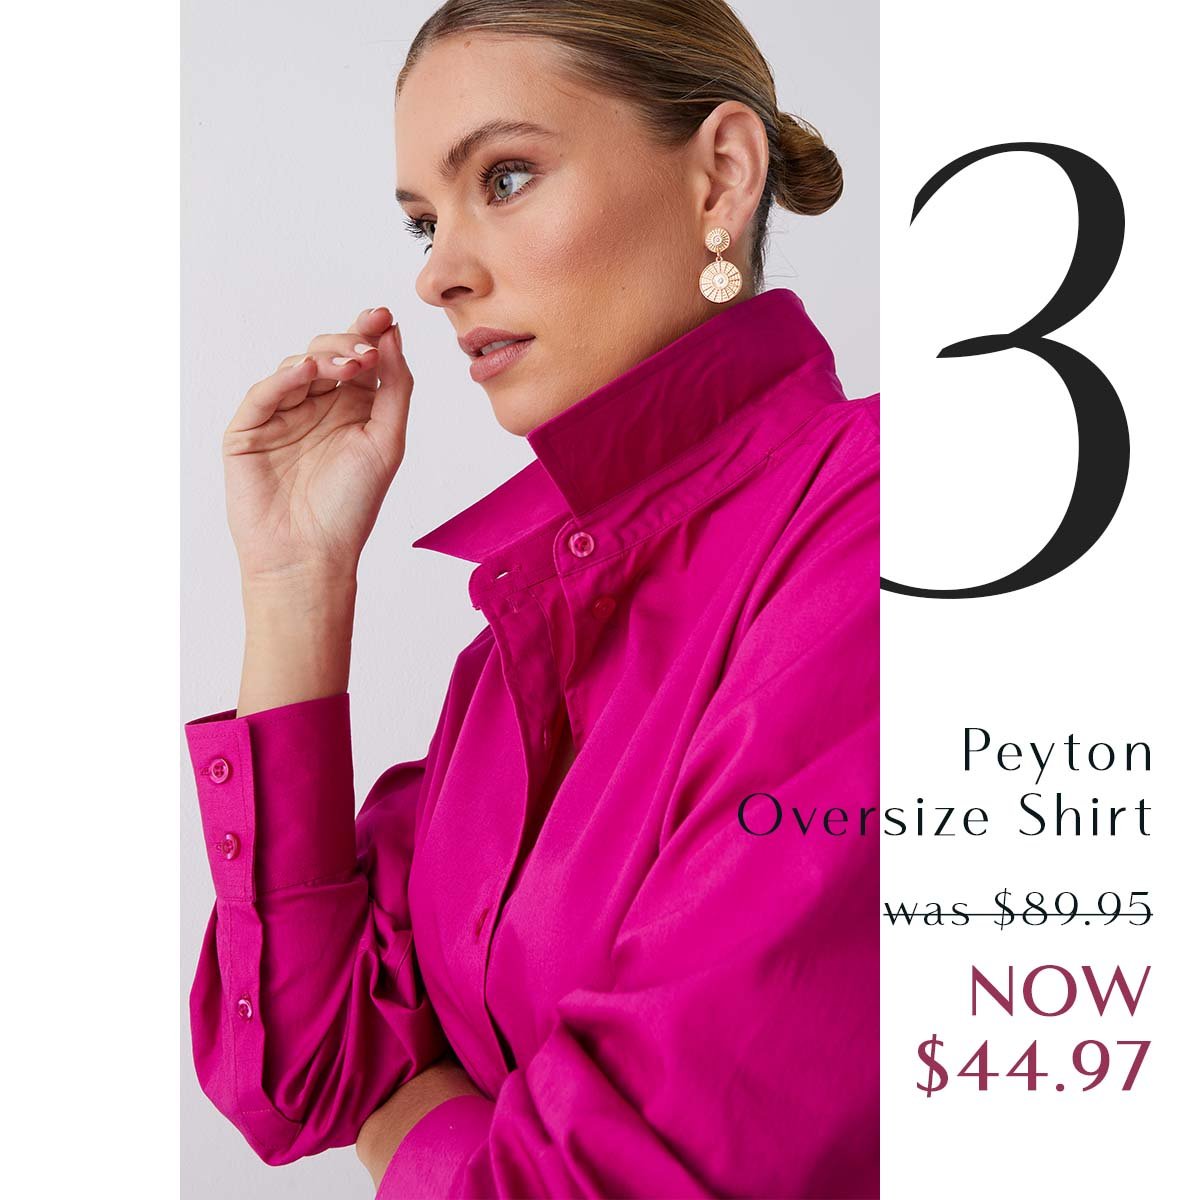 2. Peyton Oversize Shirt was $89.95 NOW $44.97